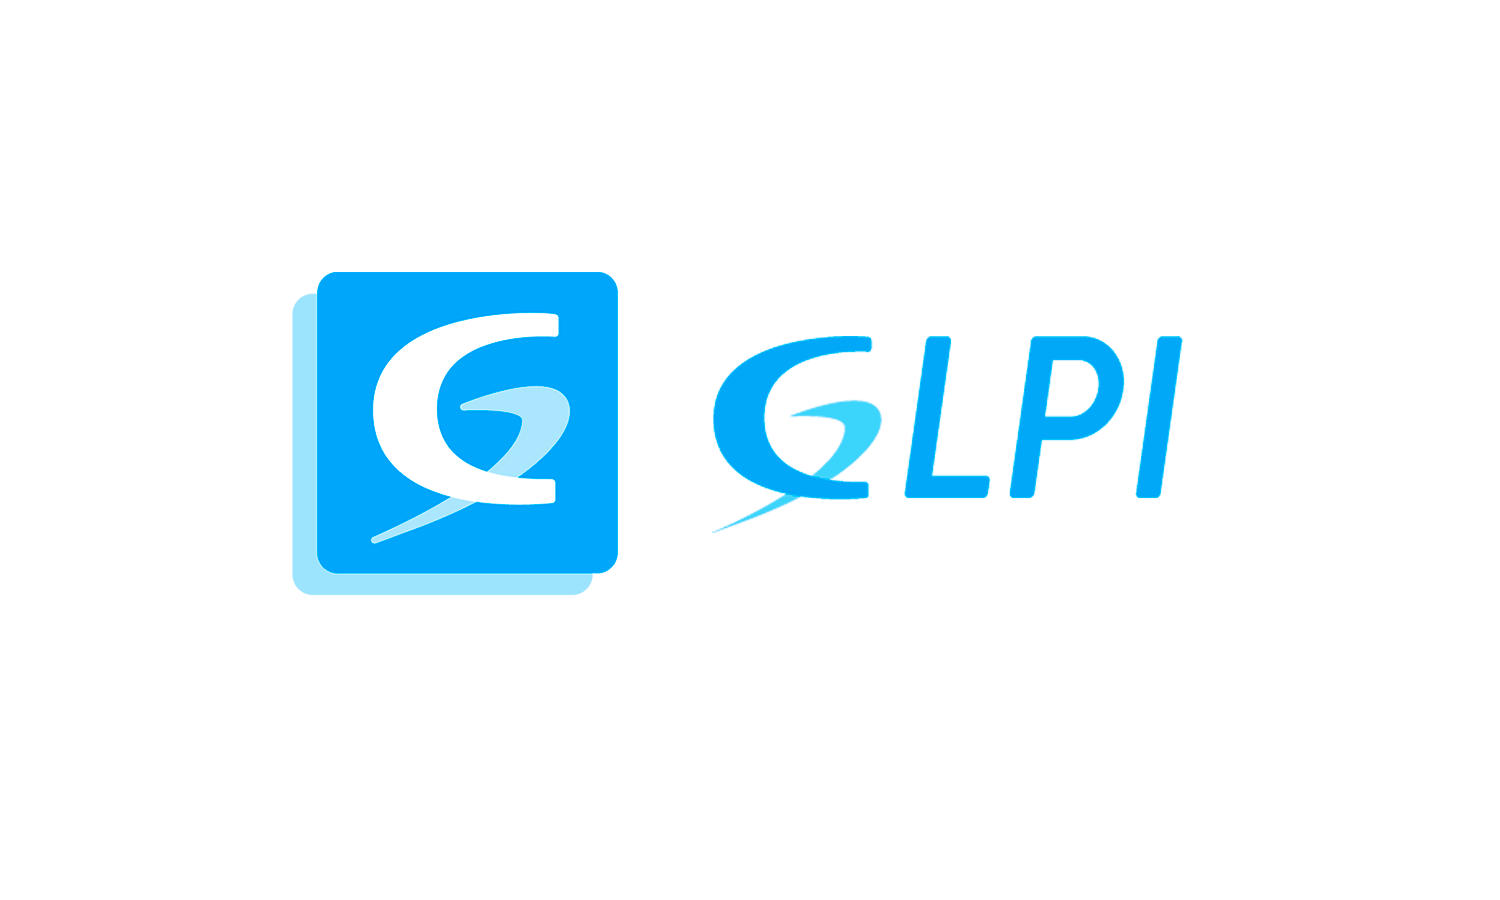 Open Source GLPI